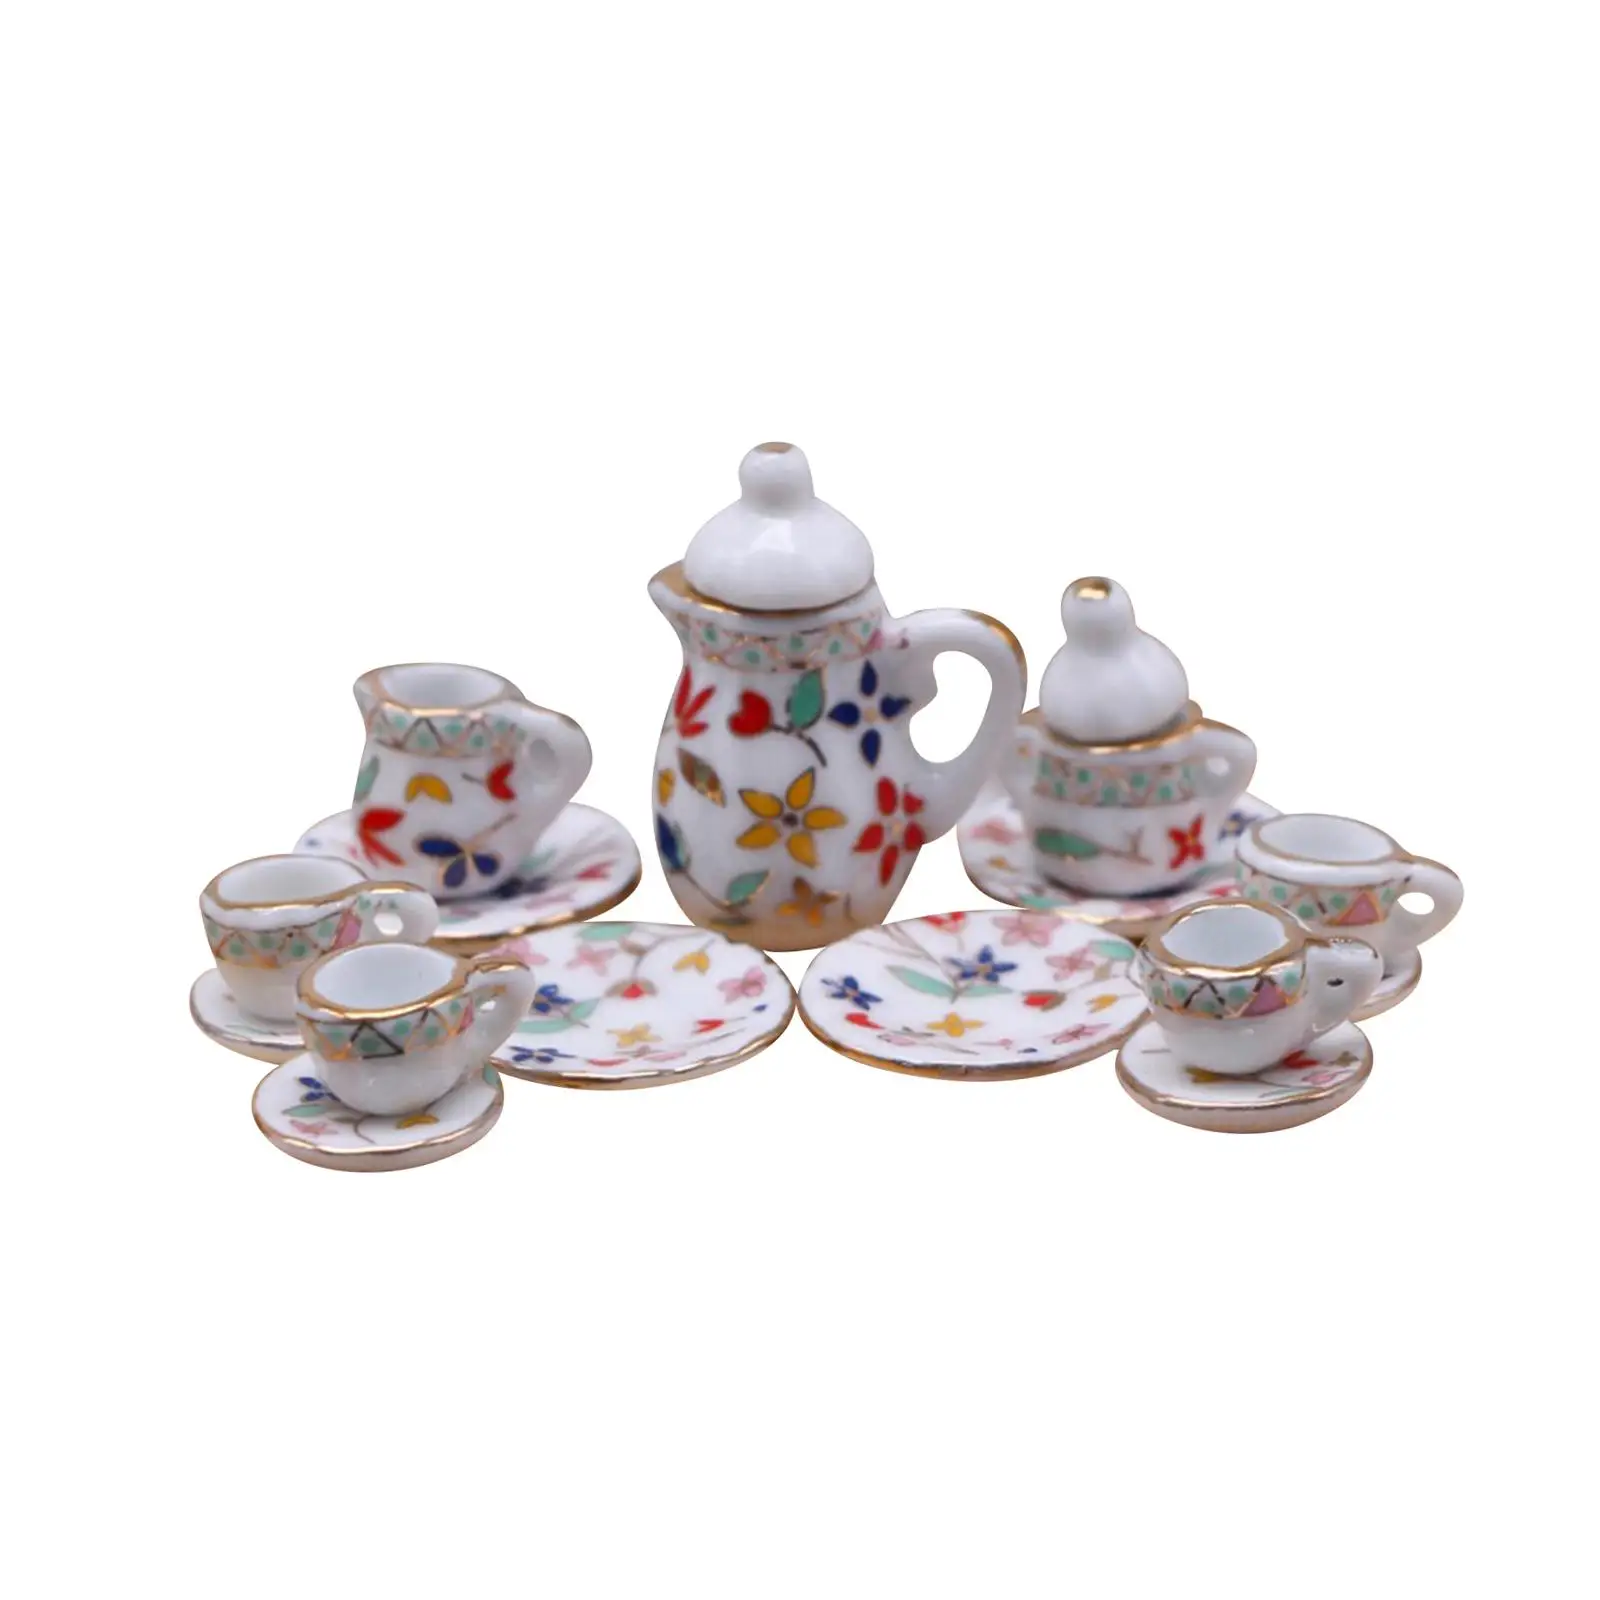 15Pcs 1:12 Dollhouse Miniature Teapot Cup Tea Set Miniature Set for Kitchen